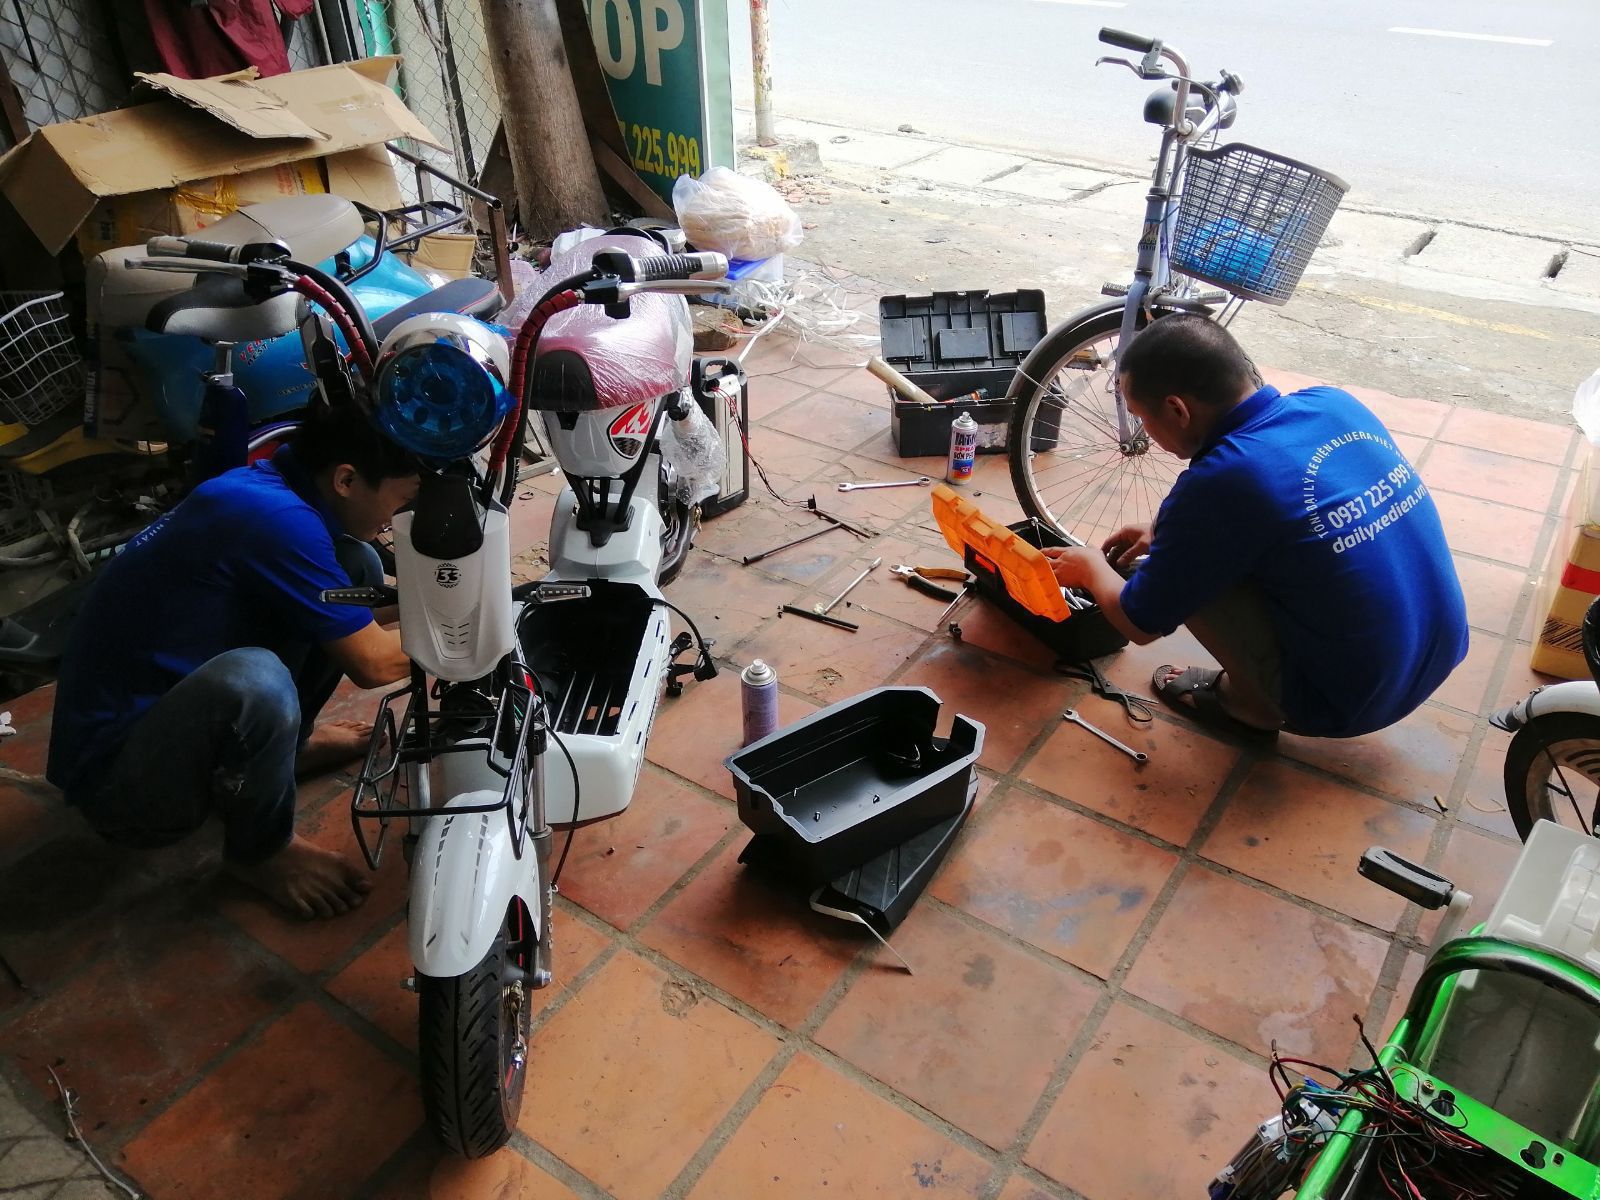 Đại Lý bán xe đạp điện quận 3 Tp. Hồ Chí Minh